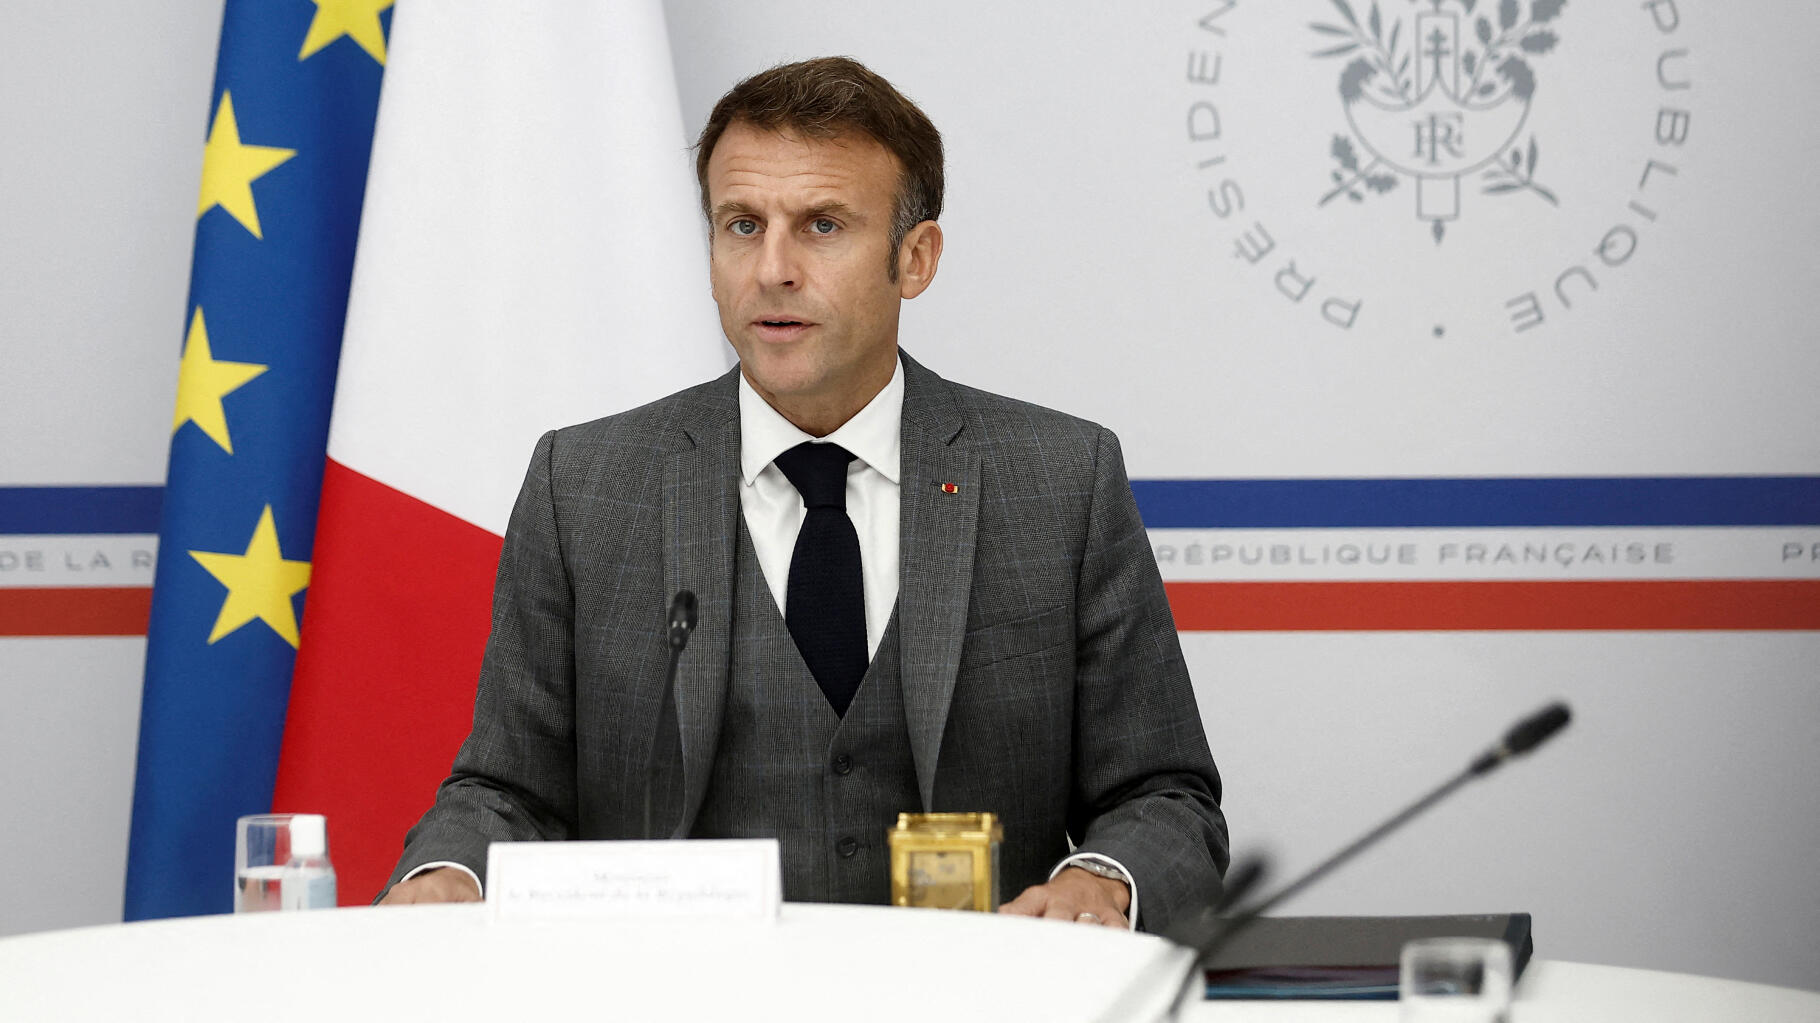 Rencontres de Saint-Denis d’Emmanuel Macron : une nouvelle édition qui n’a rien à voir avec les précédentes